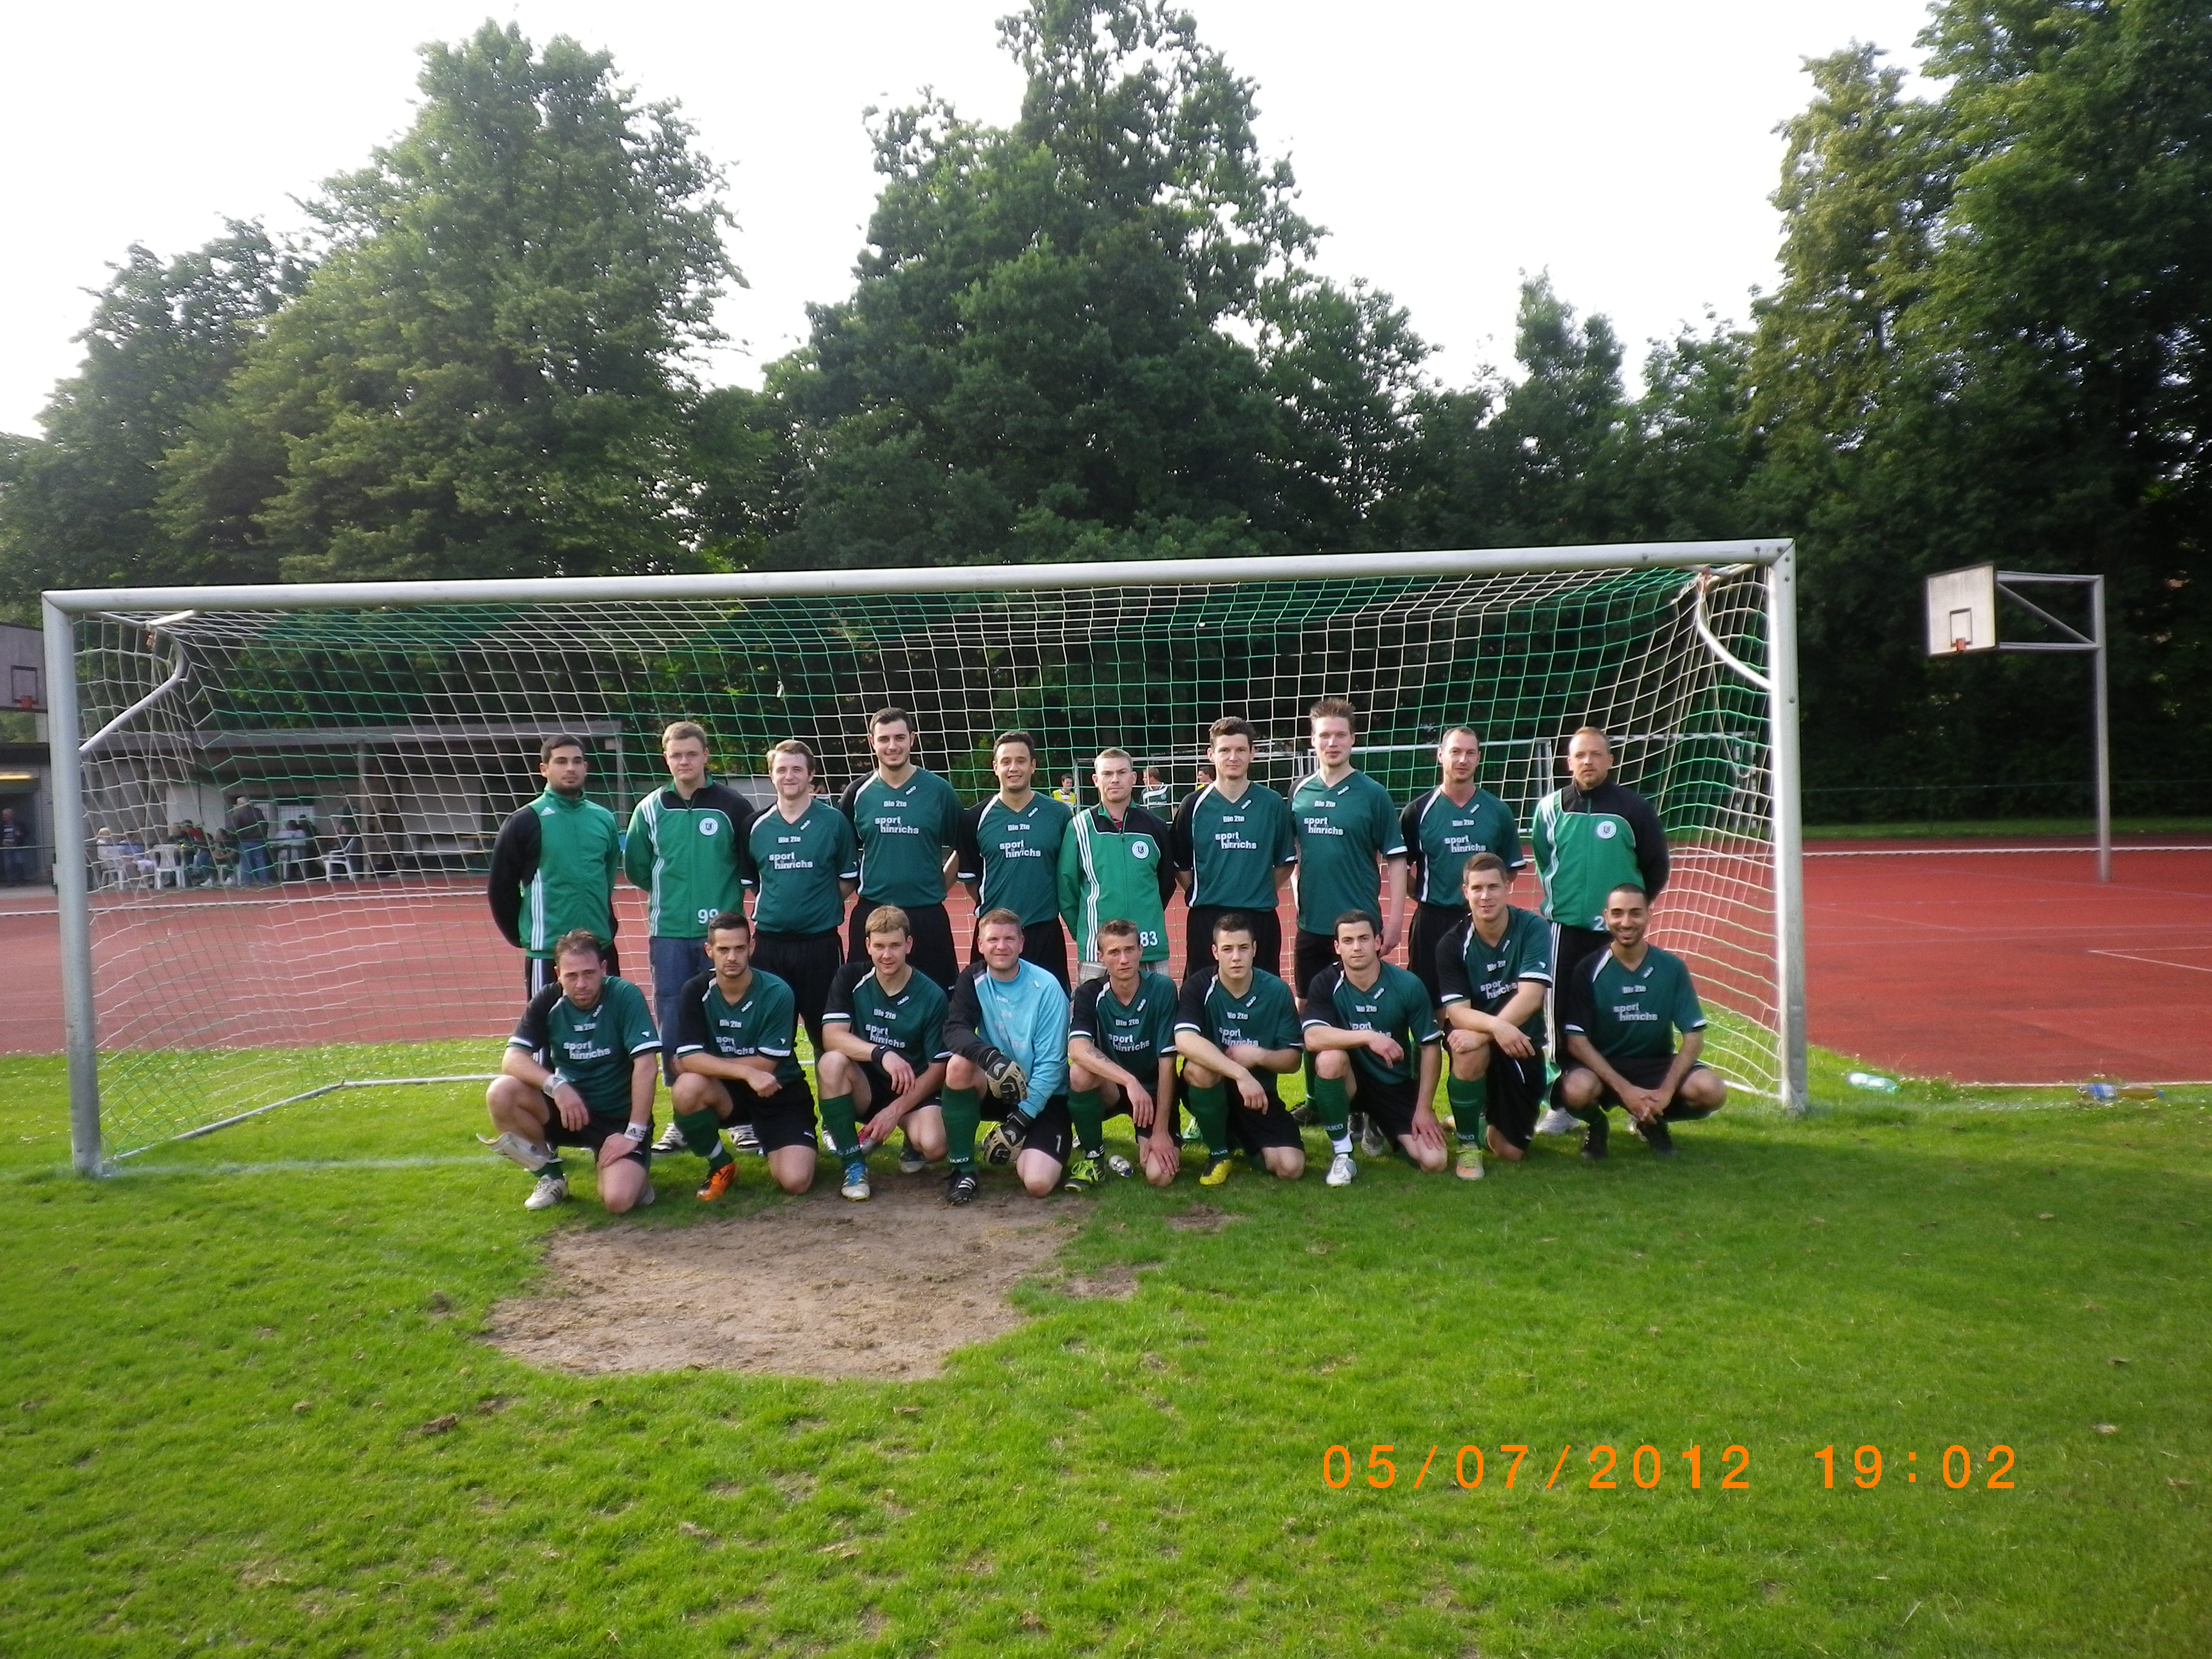 Mannschaftsfoto/Teamfoto von ETSV Eintracht Kiel